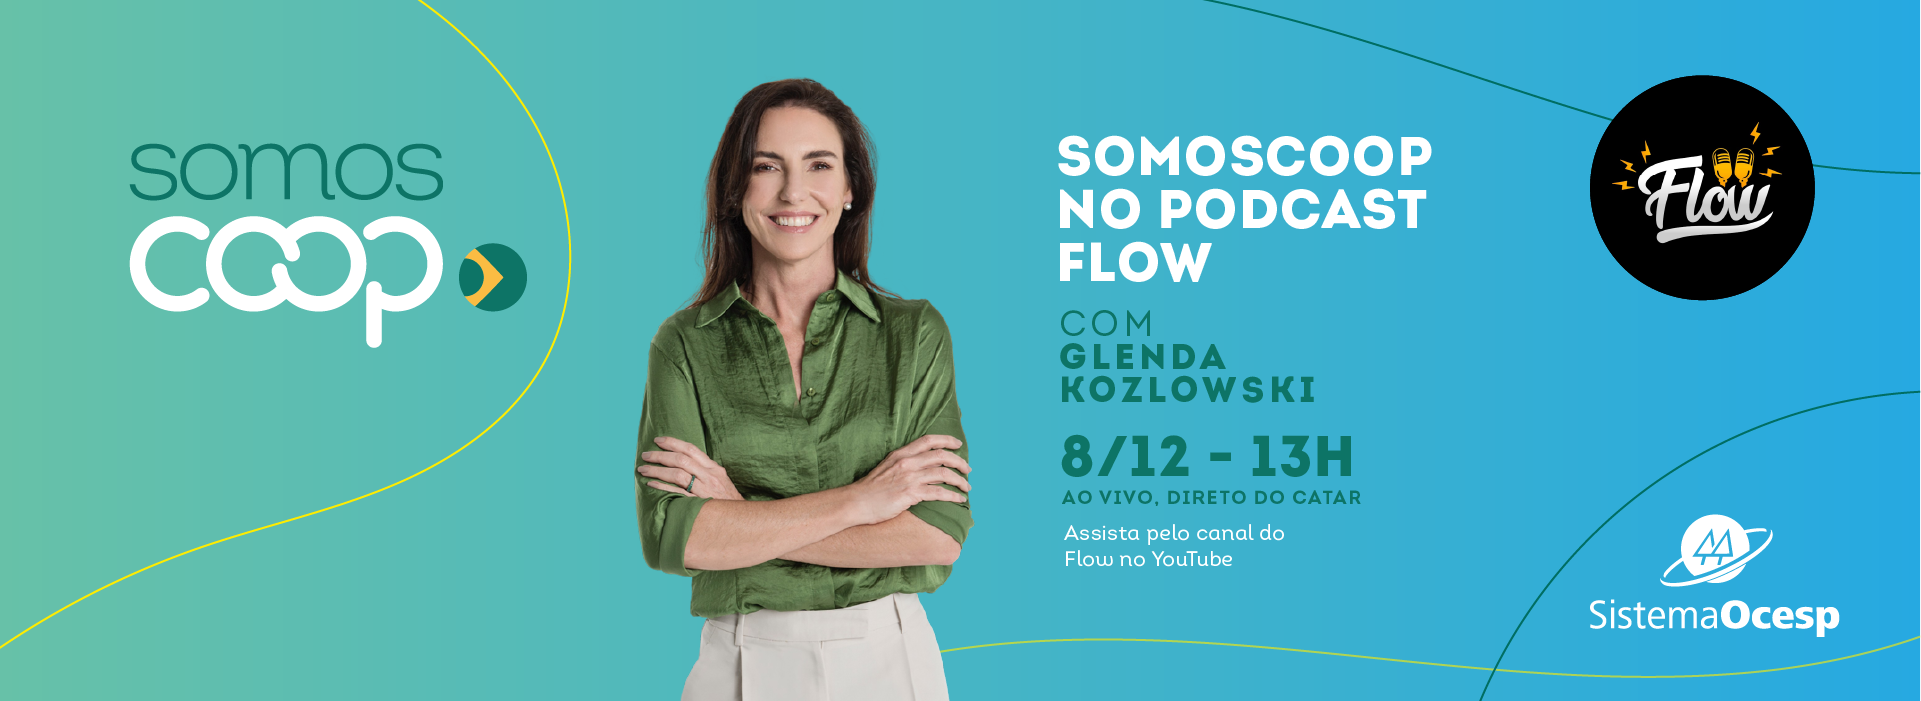 SOMOSCOOP-Flow